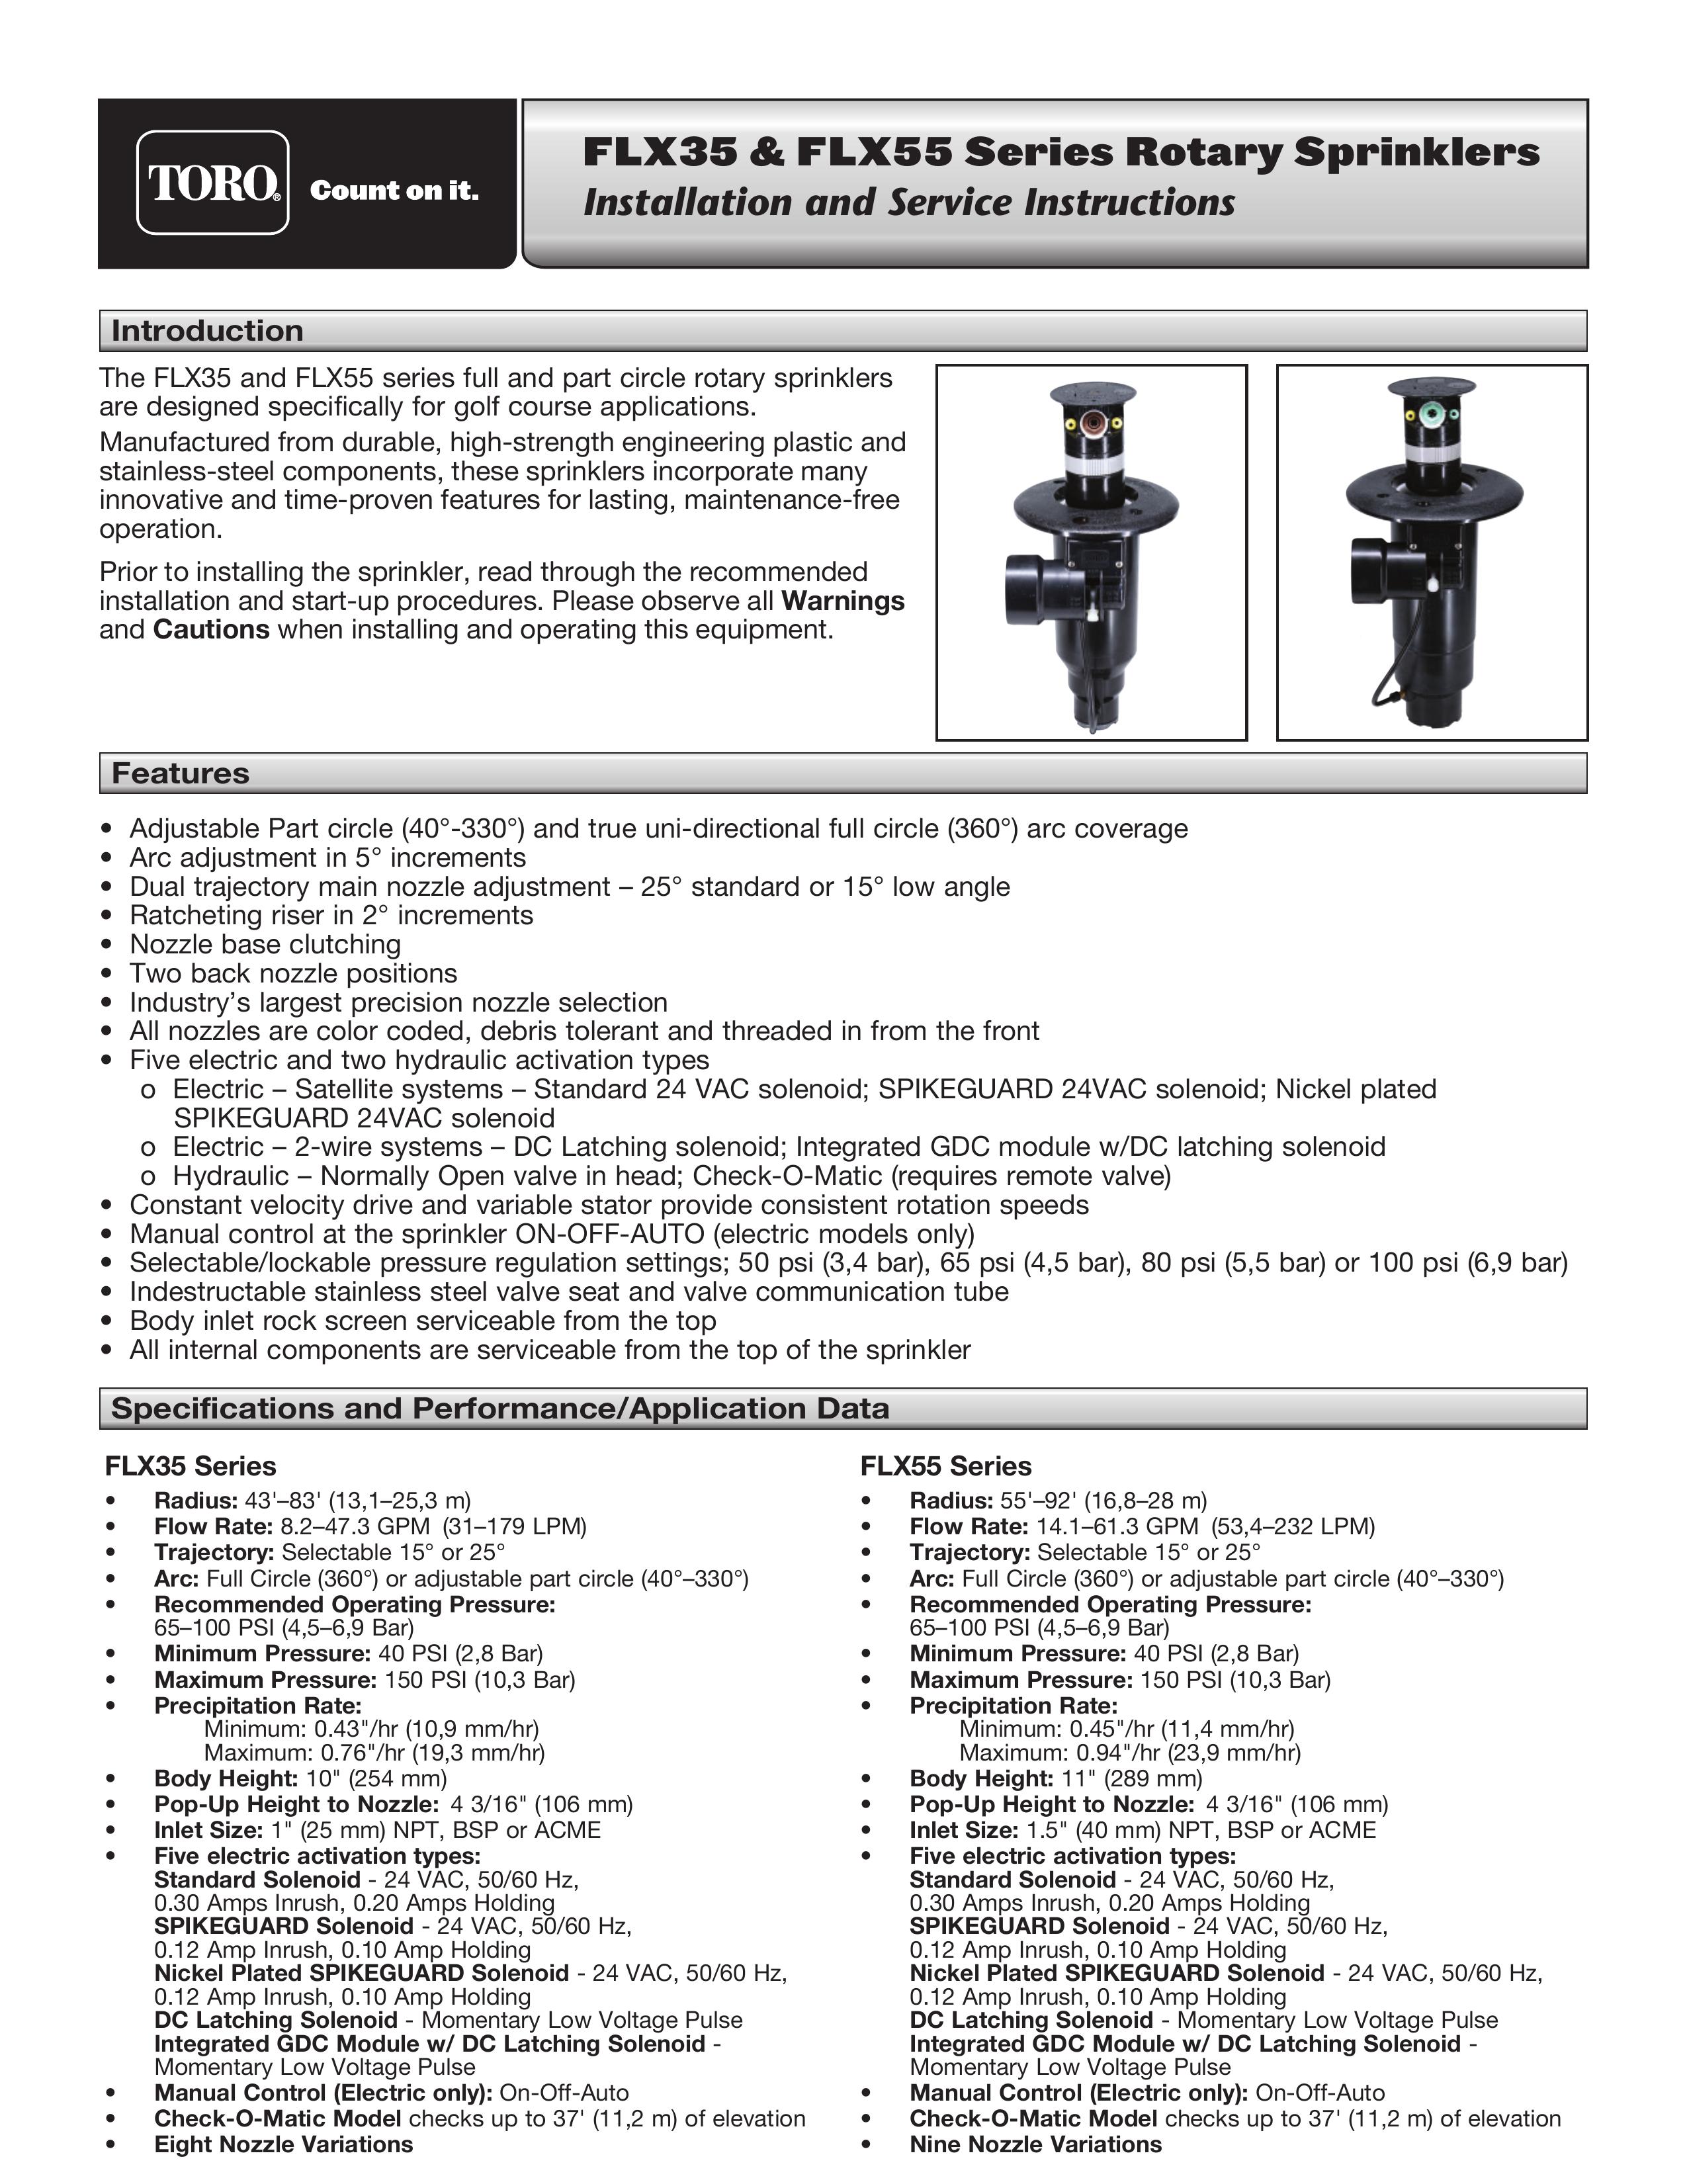 Toro FLX55 Sprinkler User Manual